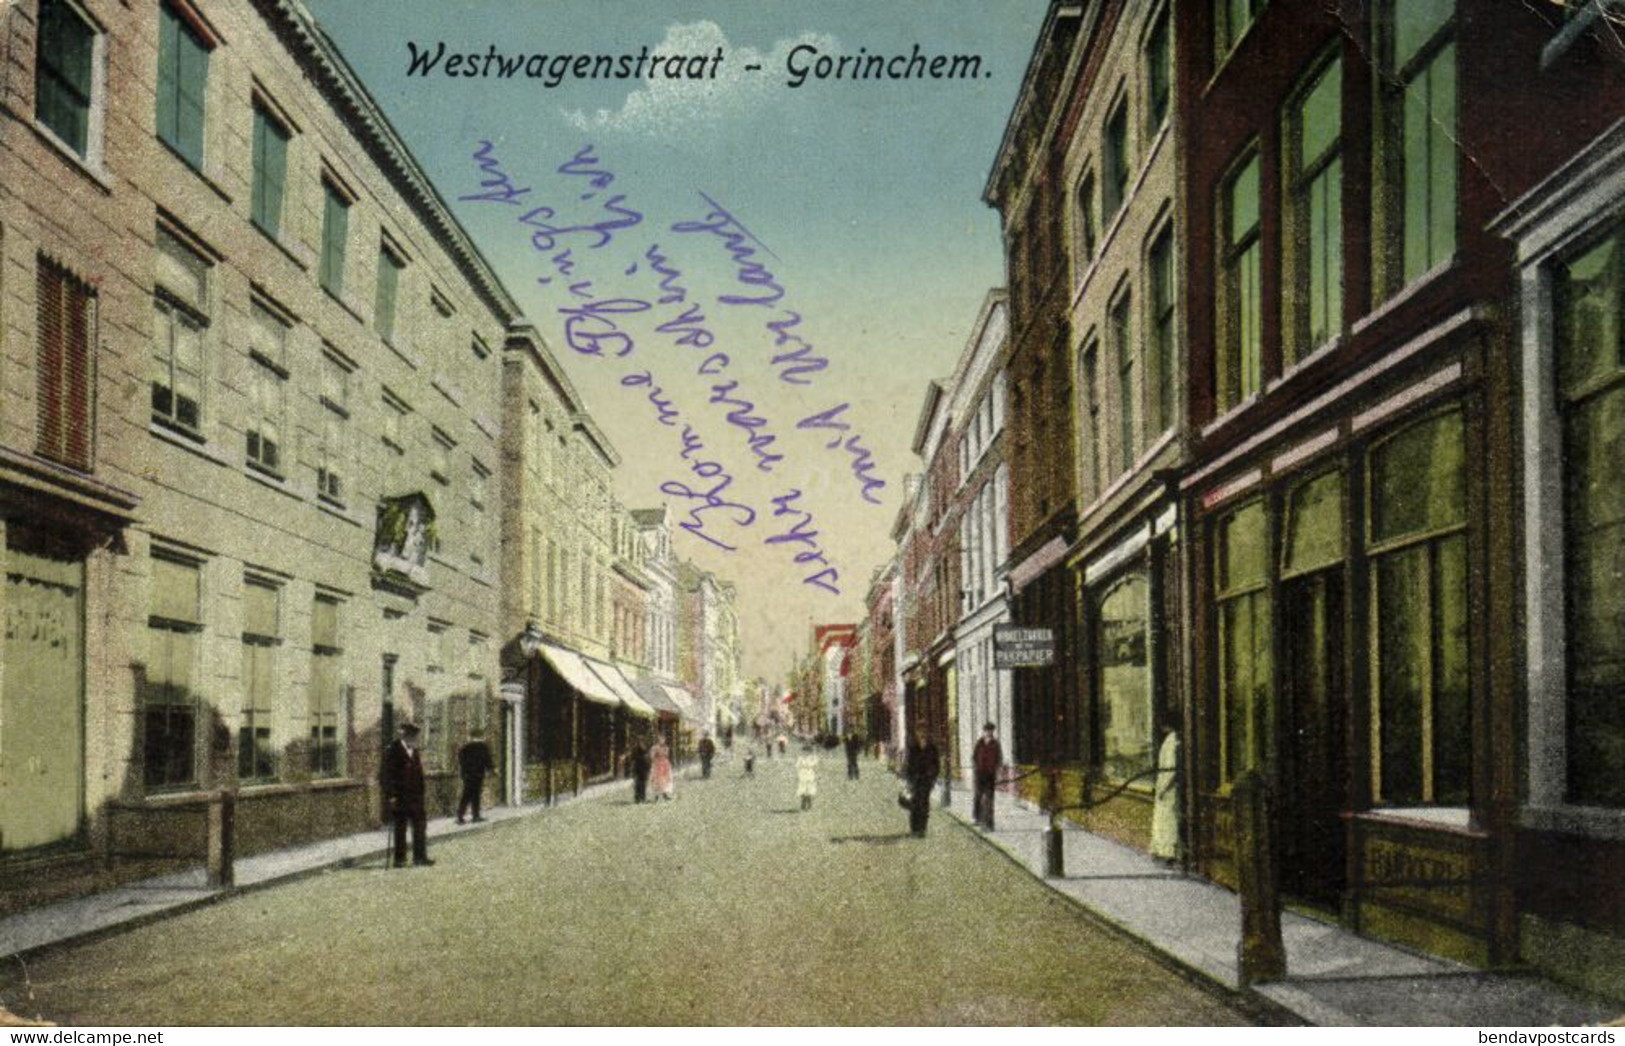 Nederland, GORINCHEM, Westwagenstraat (1919) Ansichtkaart - Gorinchem